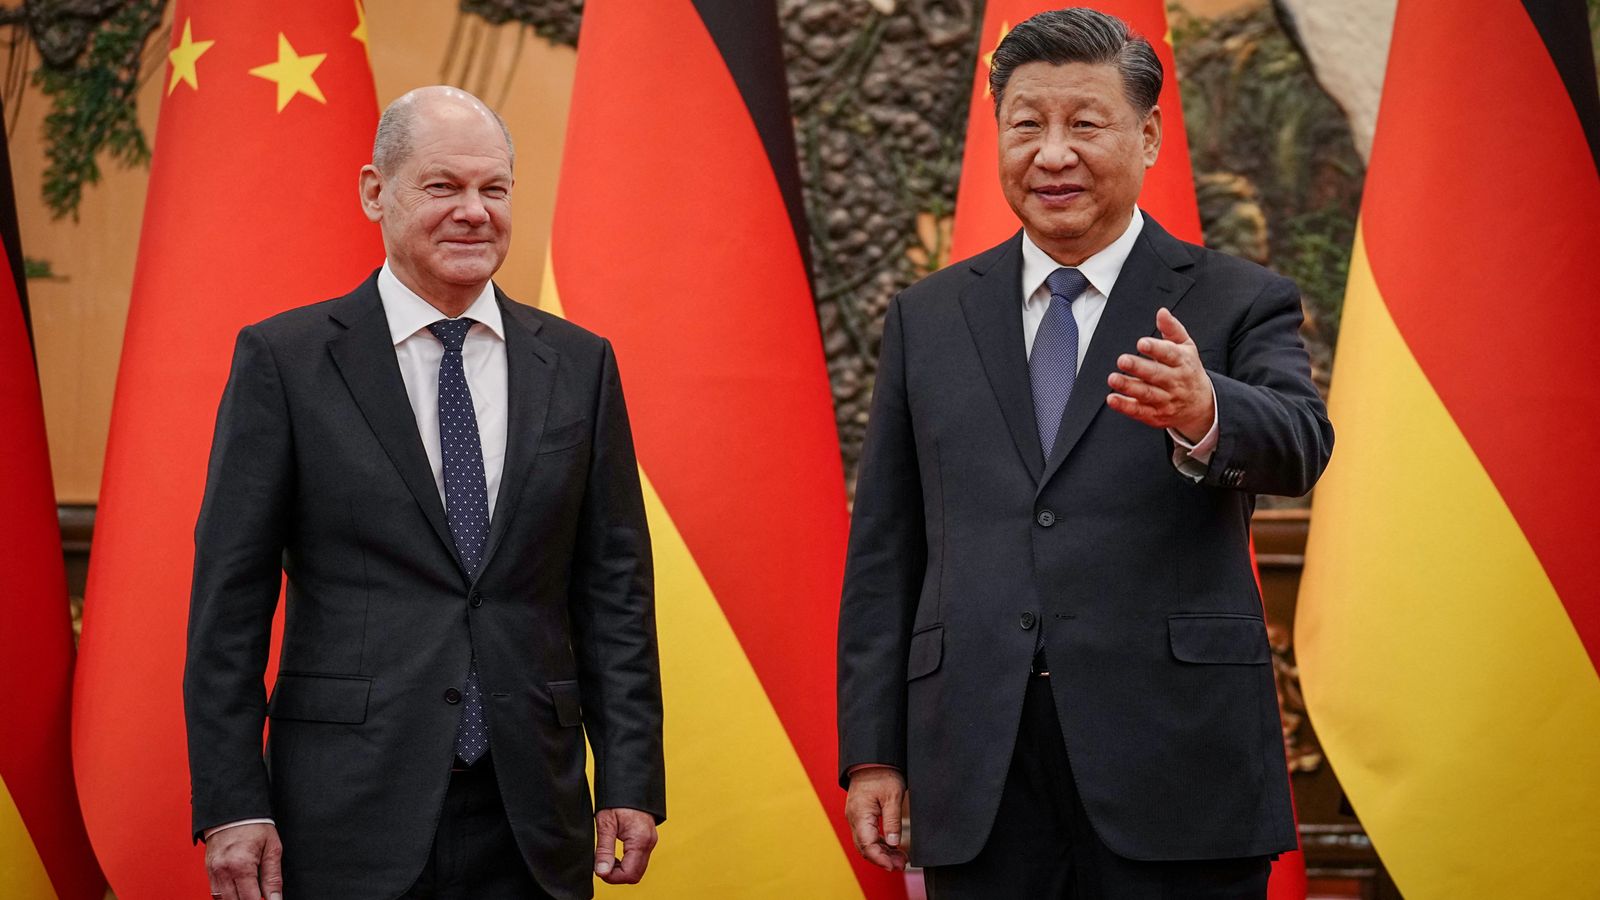 Thủ tướng Đức thăm Trung Quốc: Lợi ích kinh tế vẫn trên hết